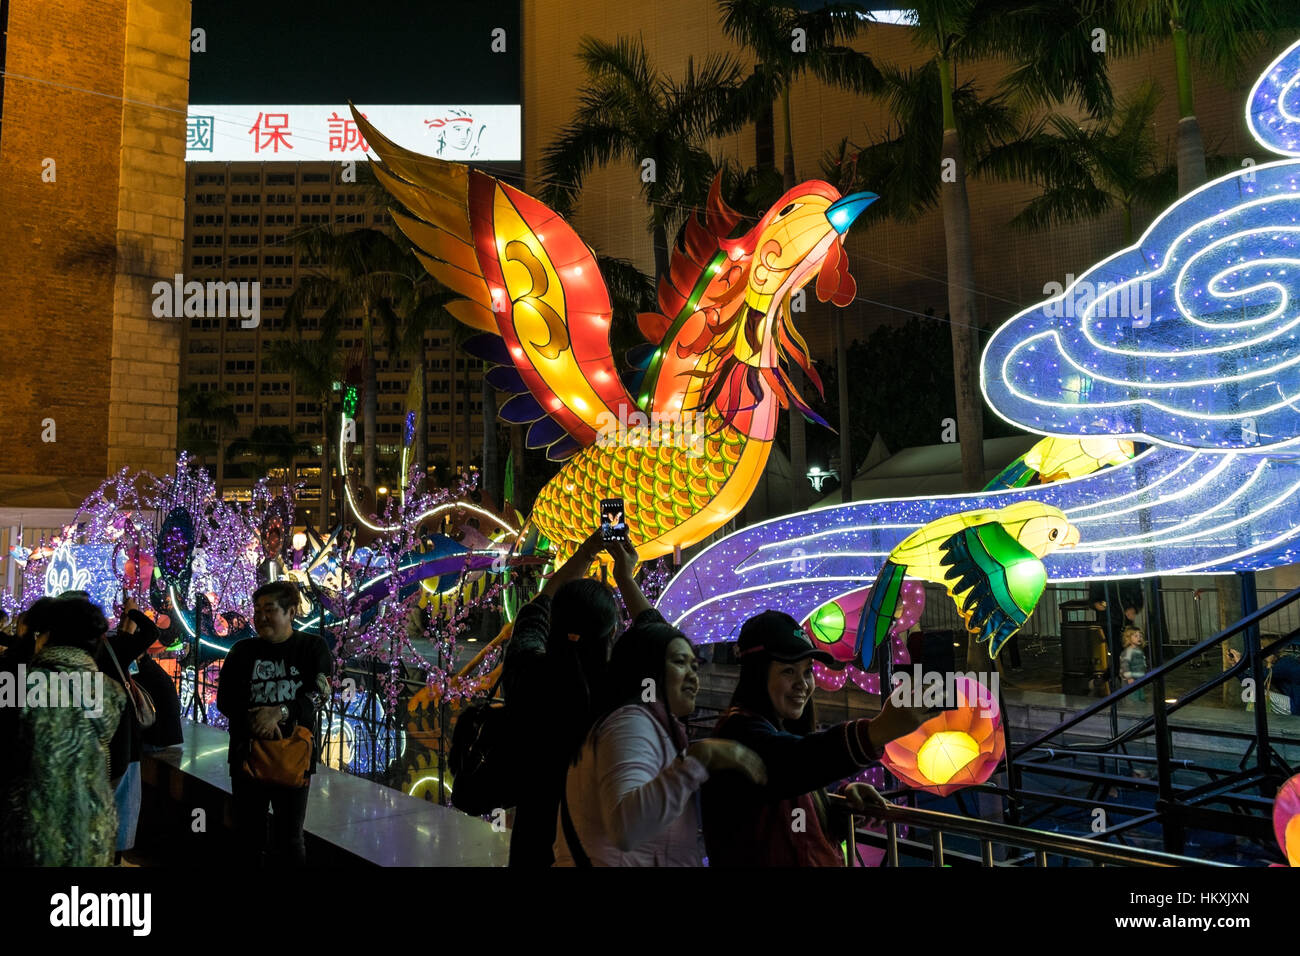 Riesige Hahn Laterne Anzeige an das chinesische Neujahr 2017 "Jahr des Hahns" Feier mit Besuchern fotografieren in Tsim Sha Tsui, Hong Kong. Stockfoto